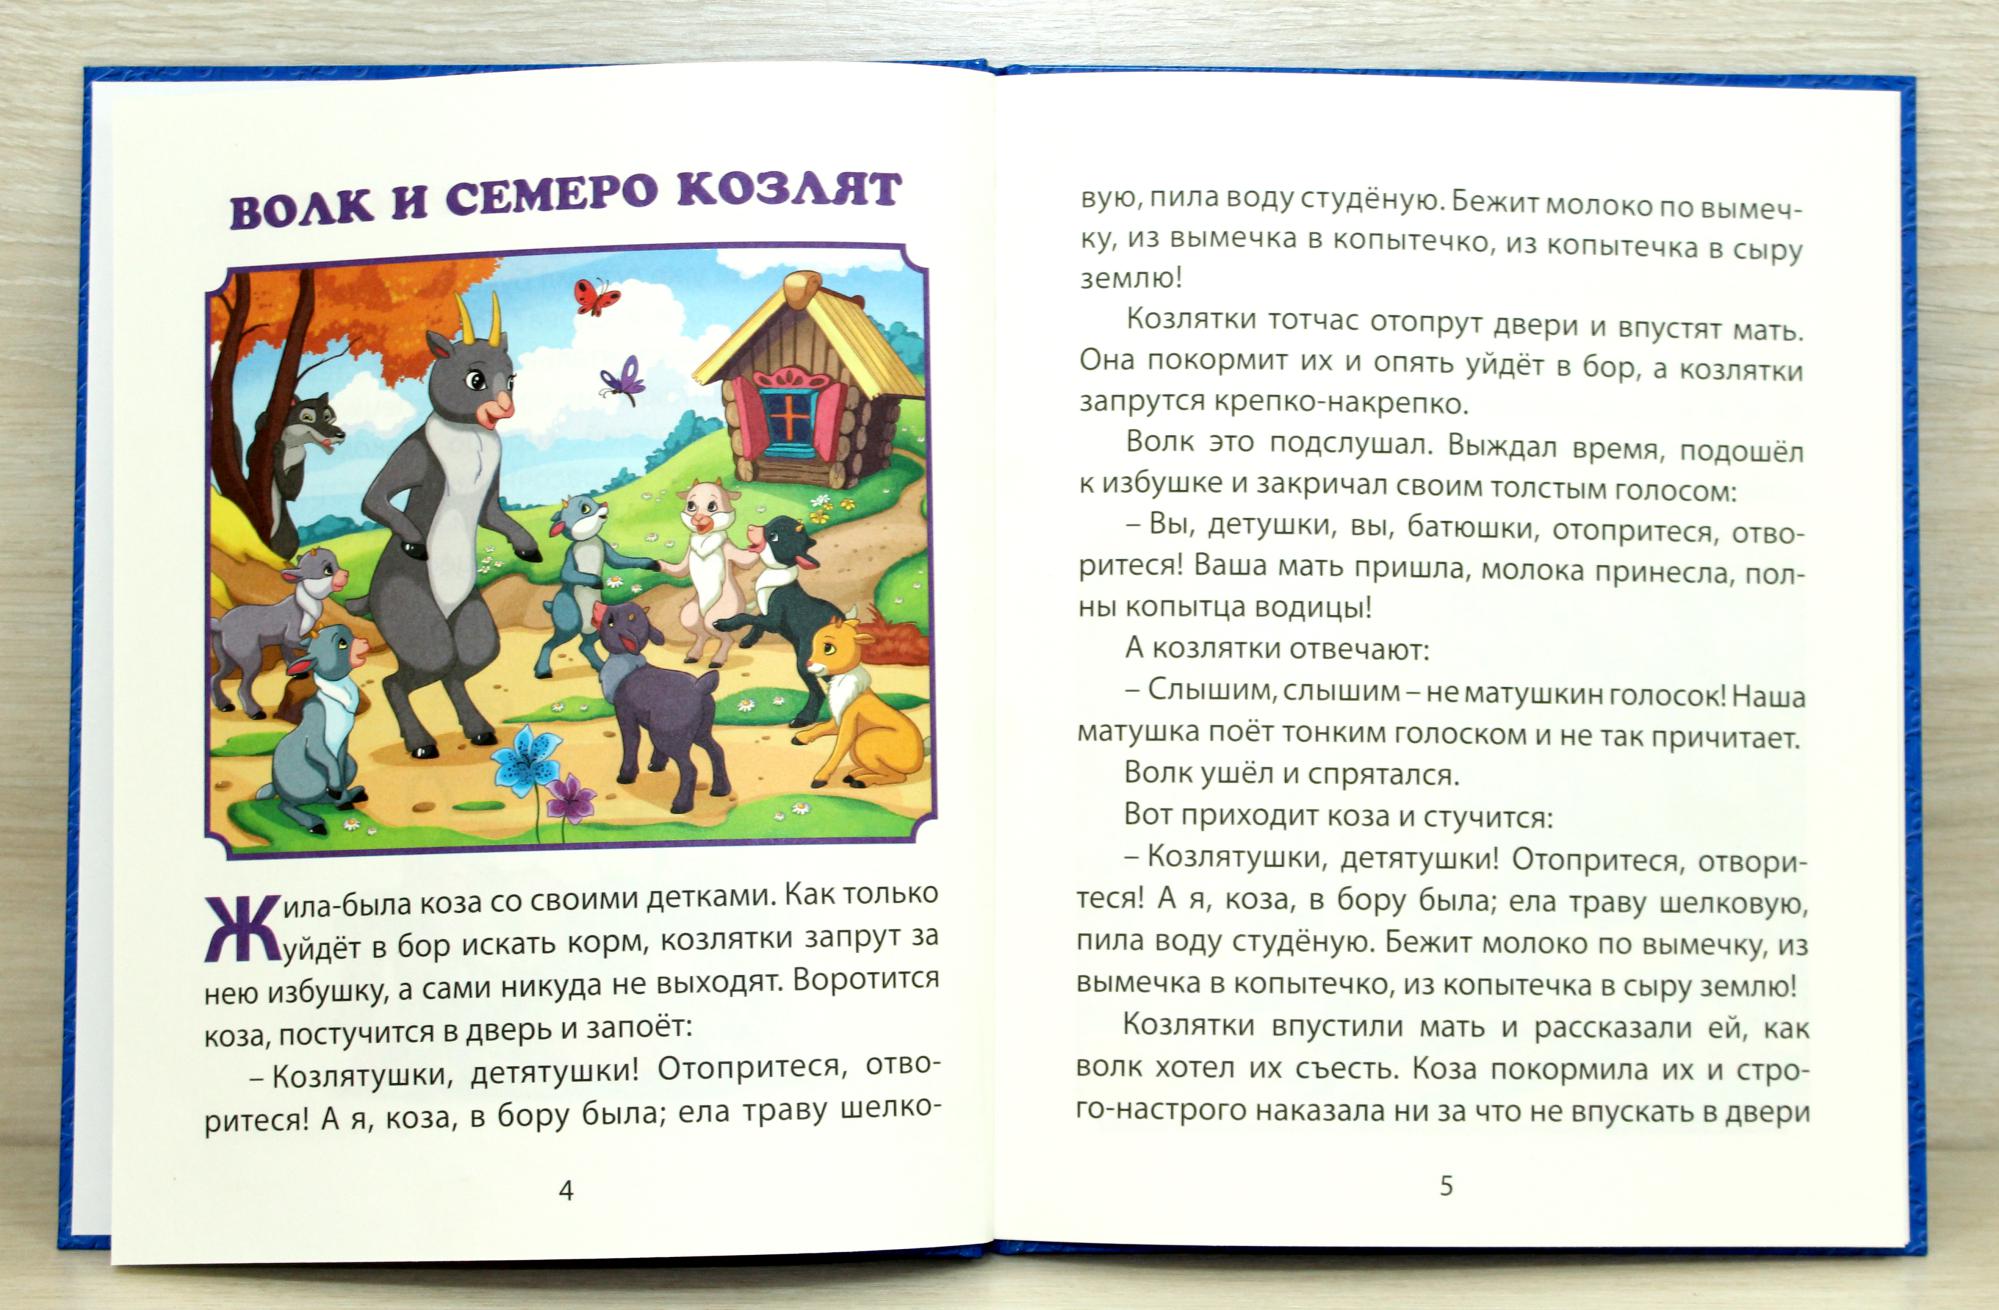 Русские народные сказки для детей. полный список